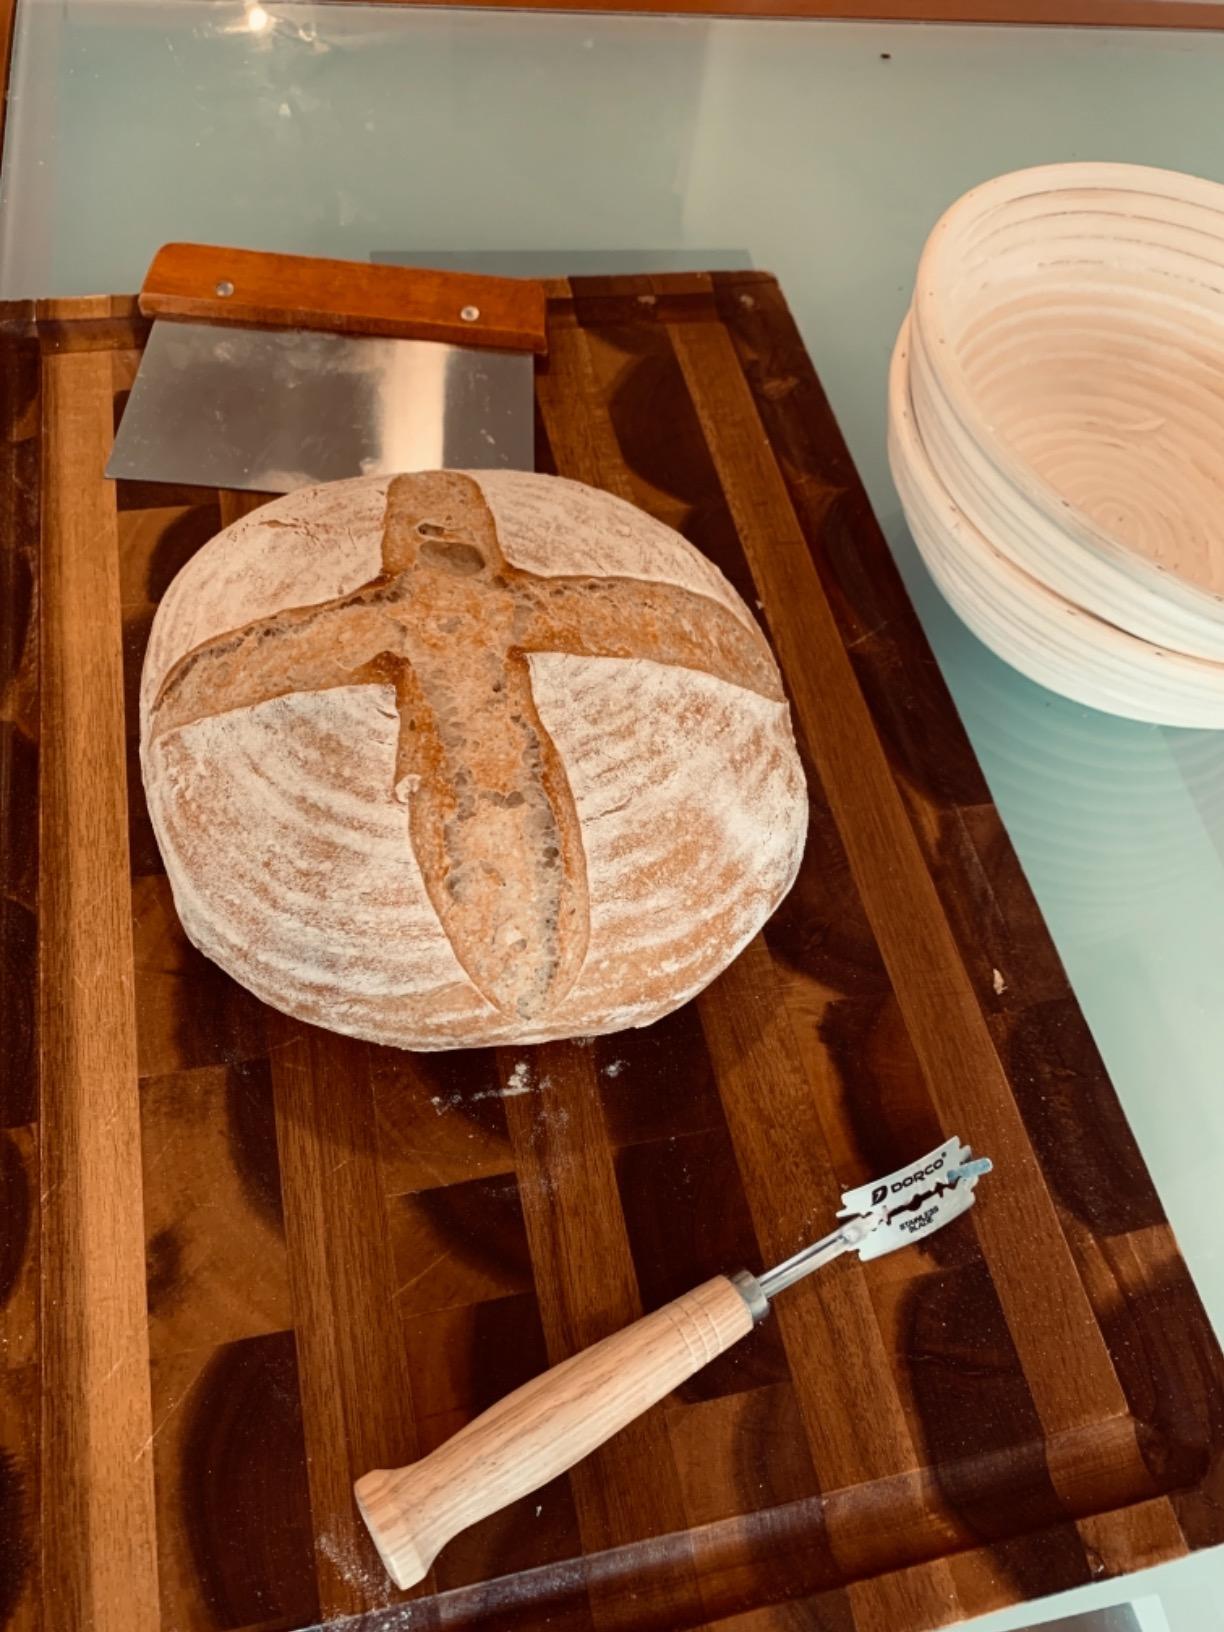 proofing set, by kook, sourdough bread, 2 rattan 9 inch